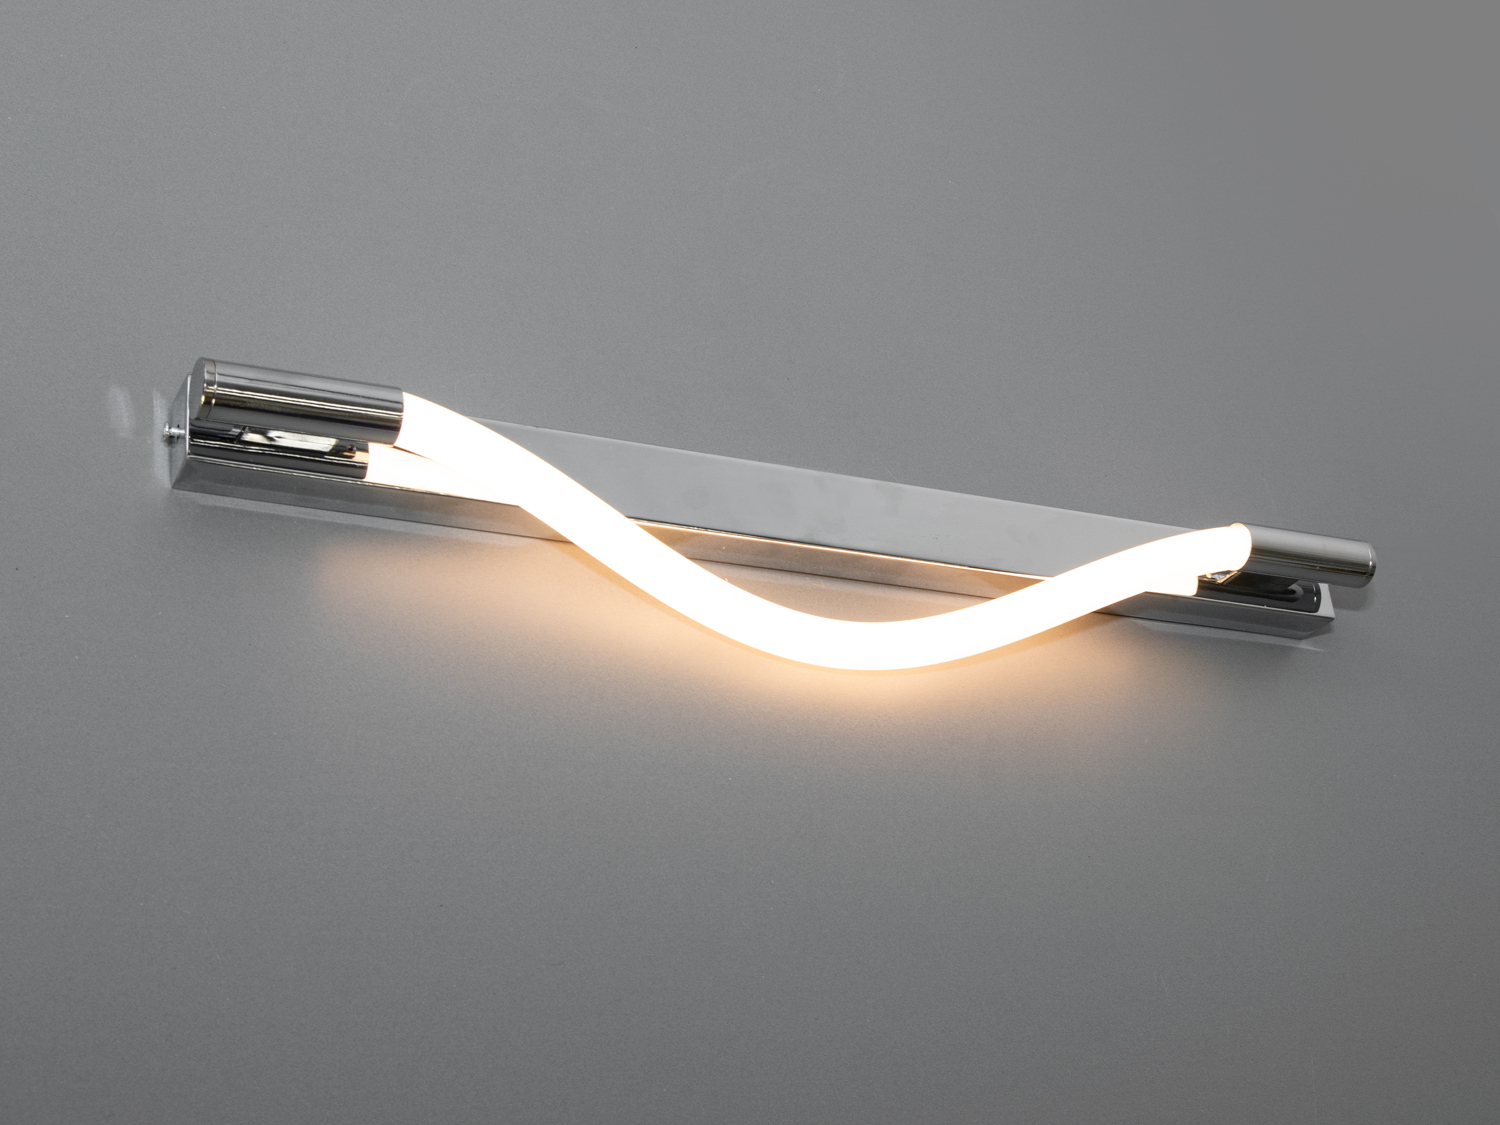 Сучасний світлодіодний світильник шланг потужністю 5W, хромСветодиодные бра, Светильники LED, Потолочные, Серия 